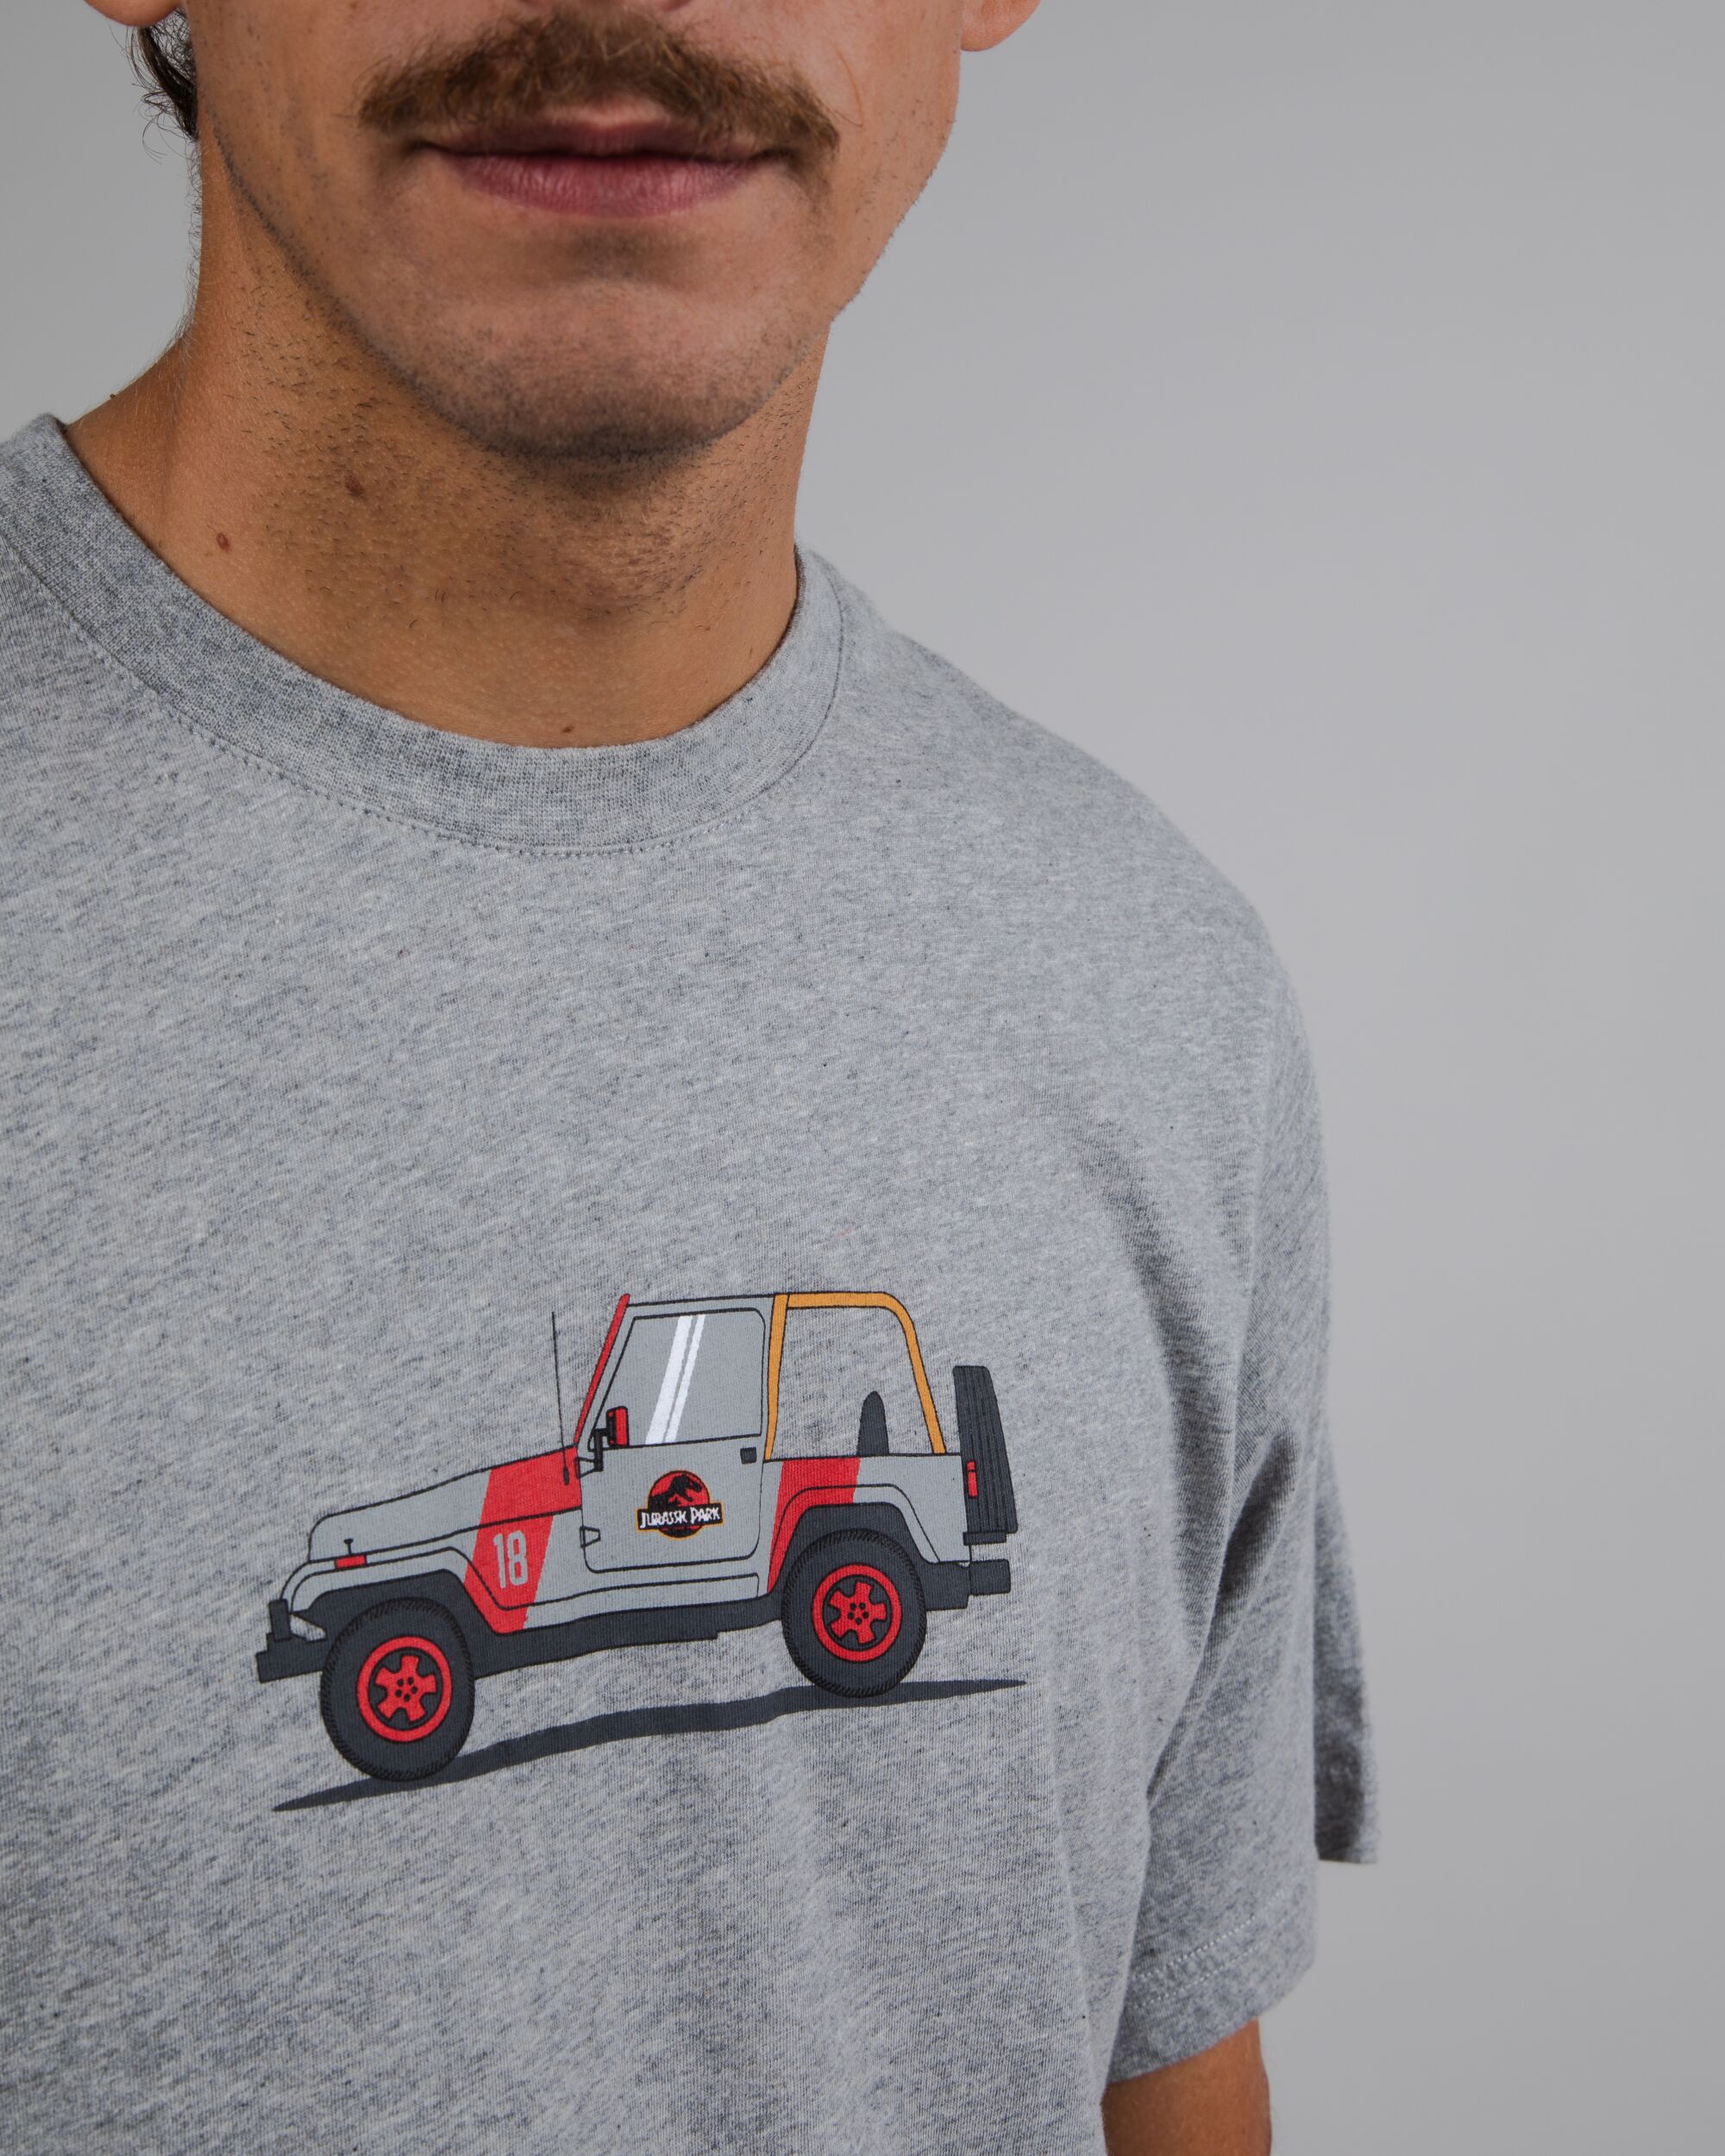  Jurrasic Park Jeep T-Shirt